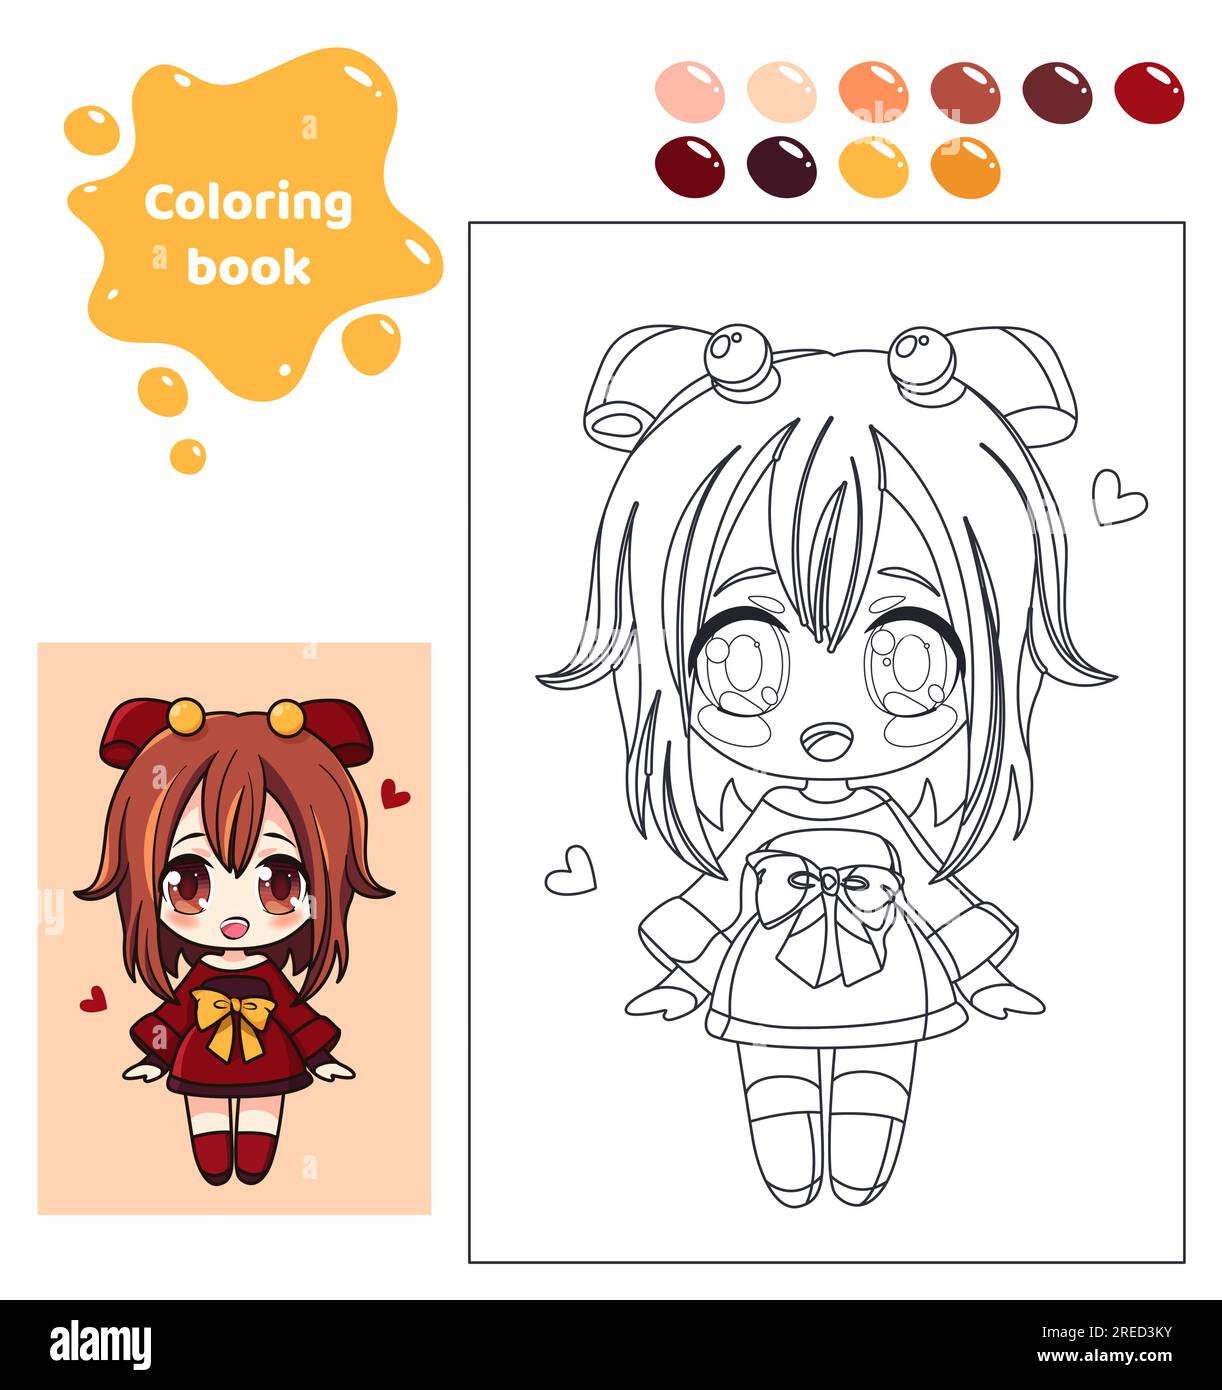 Coloring book for kids. Girl in school uniform. Stock Vector